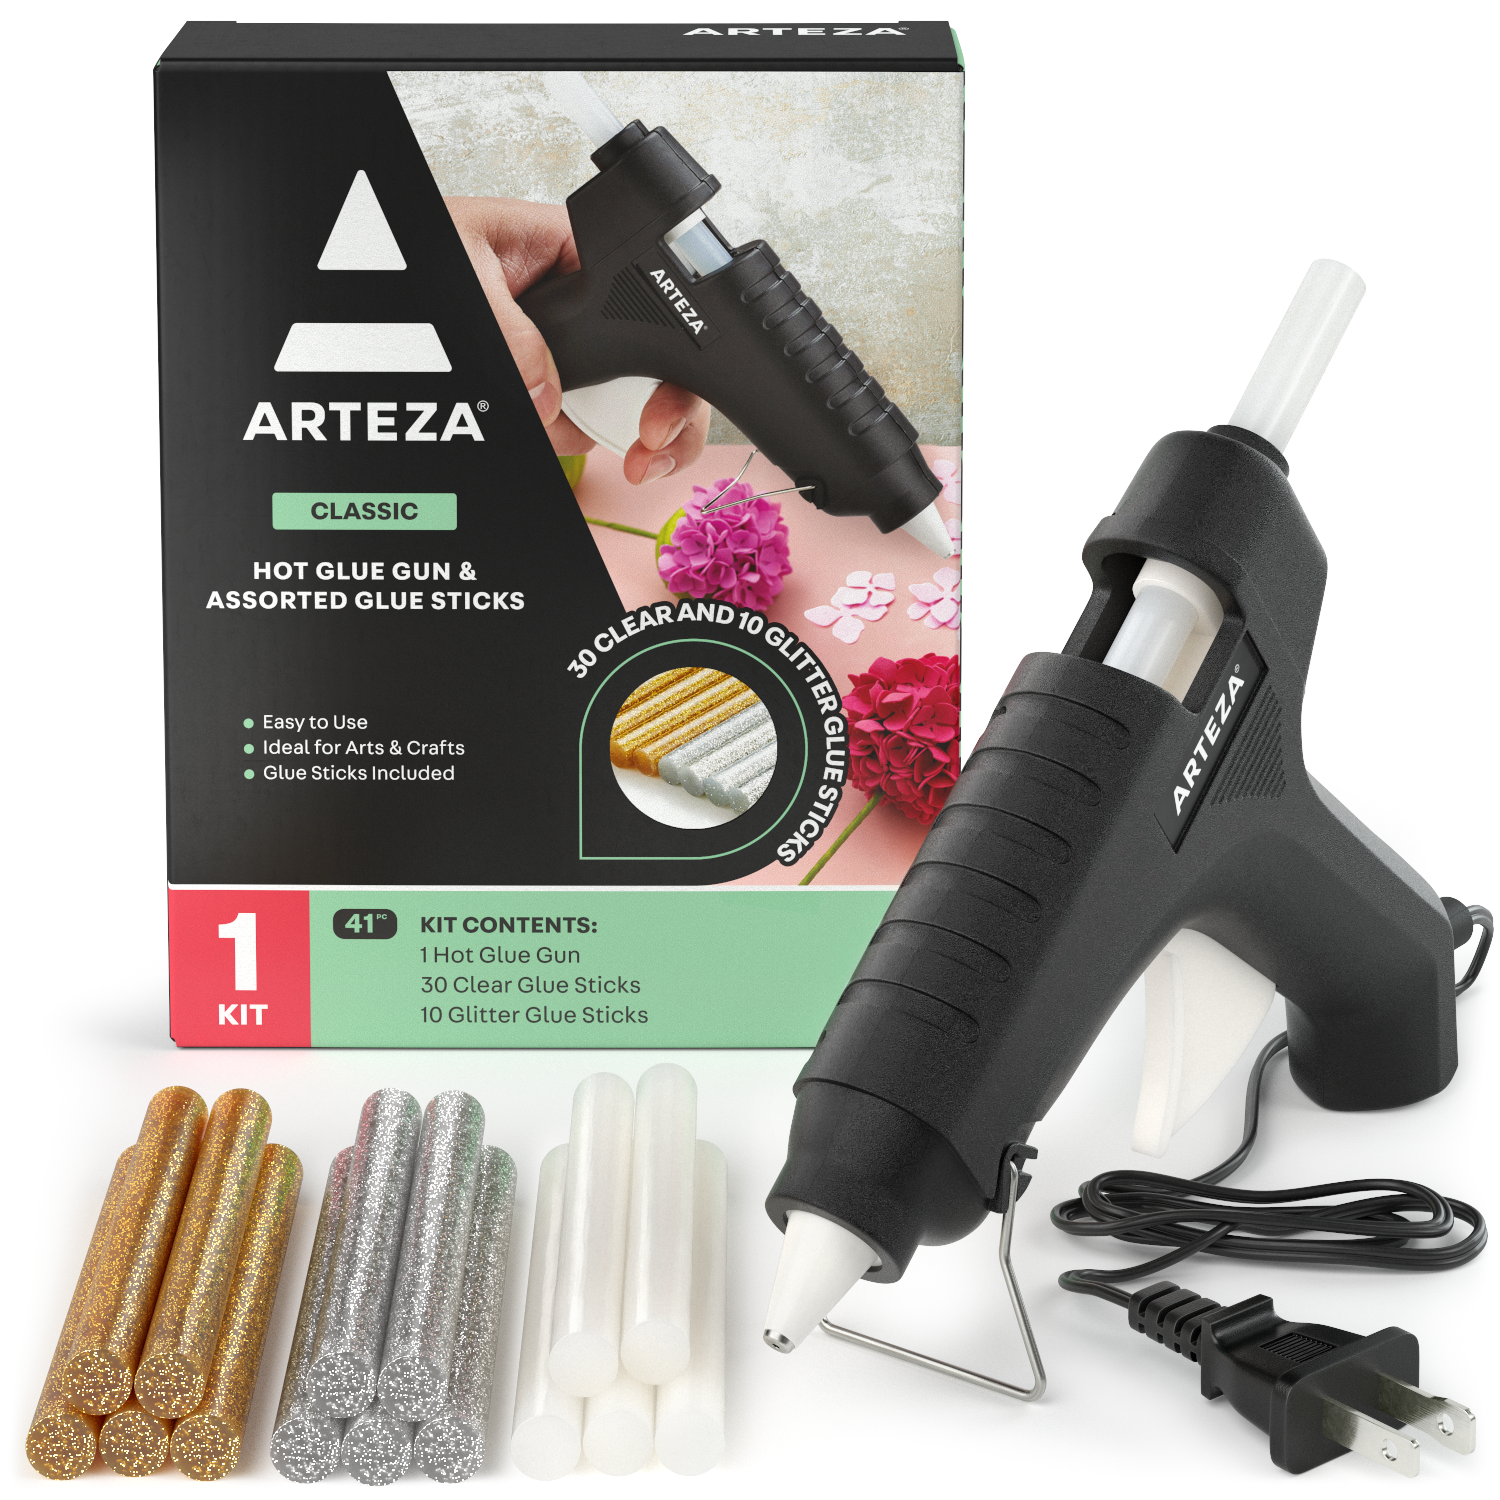 Arteza Glue Gun (40W) - 30 Clear and 10 Glitter Glue Sticks